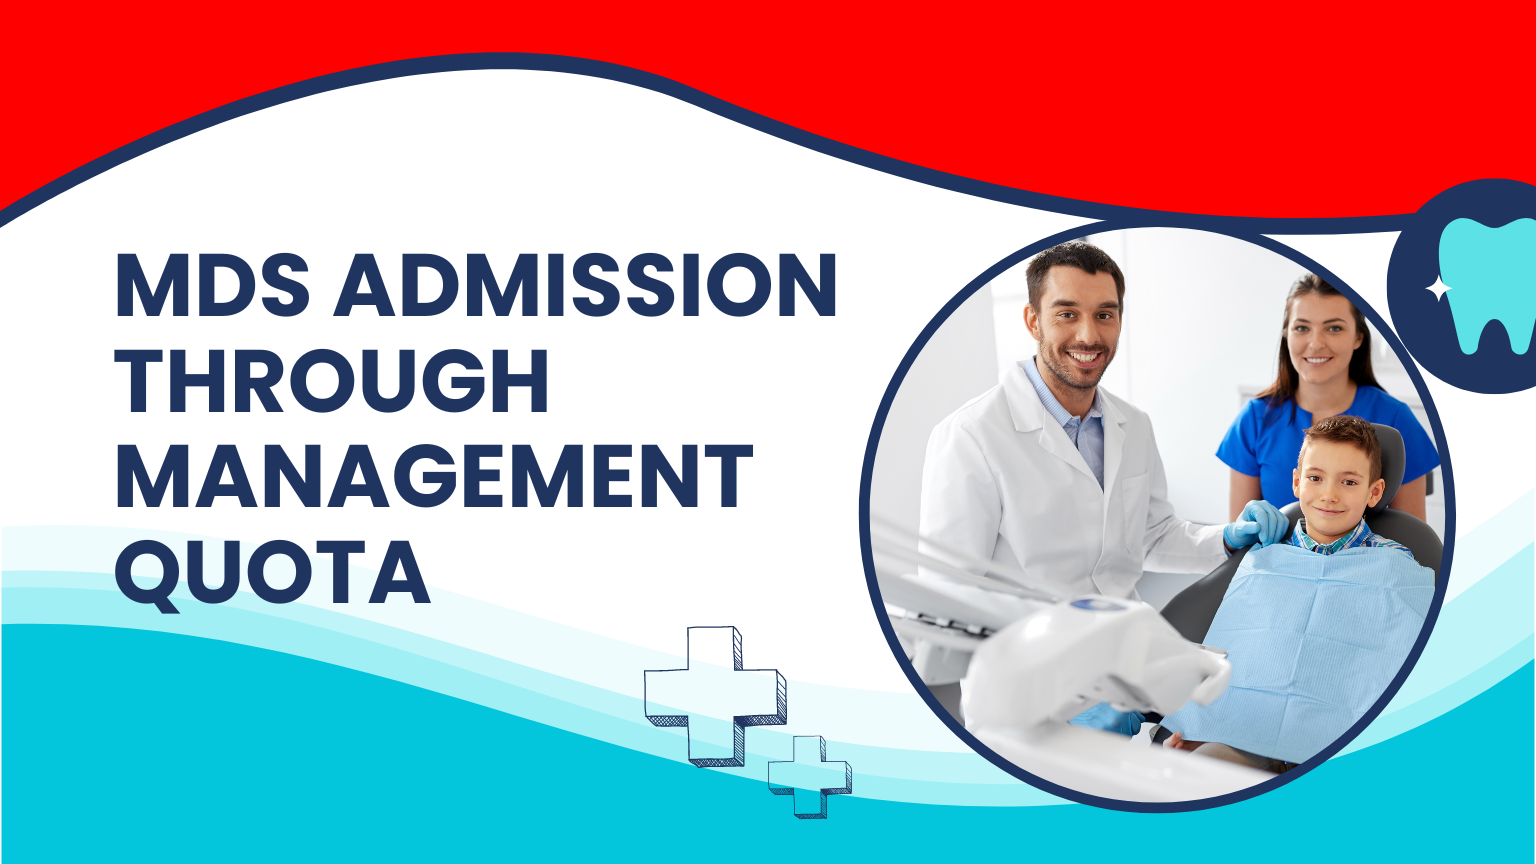 MDS Admission through management quota